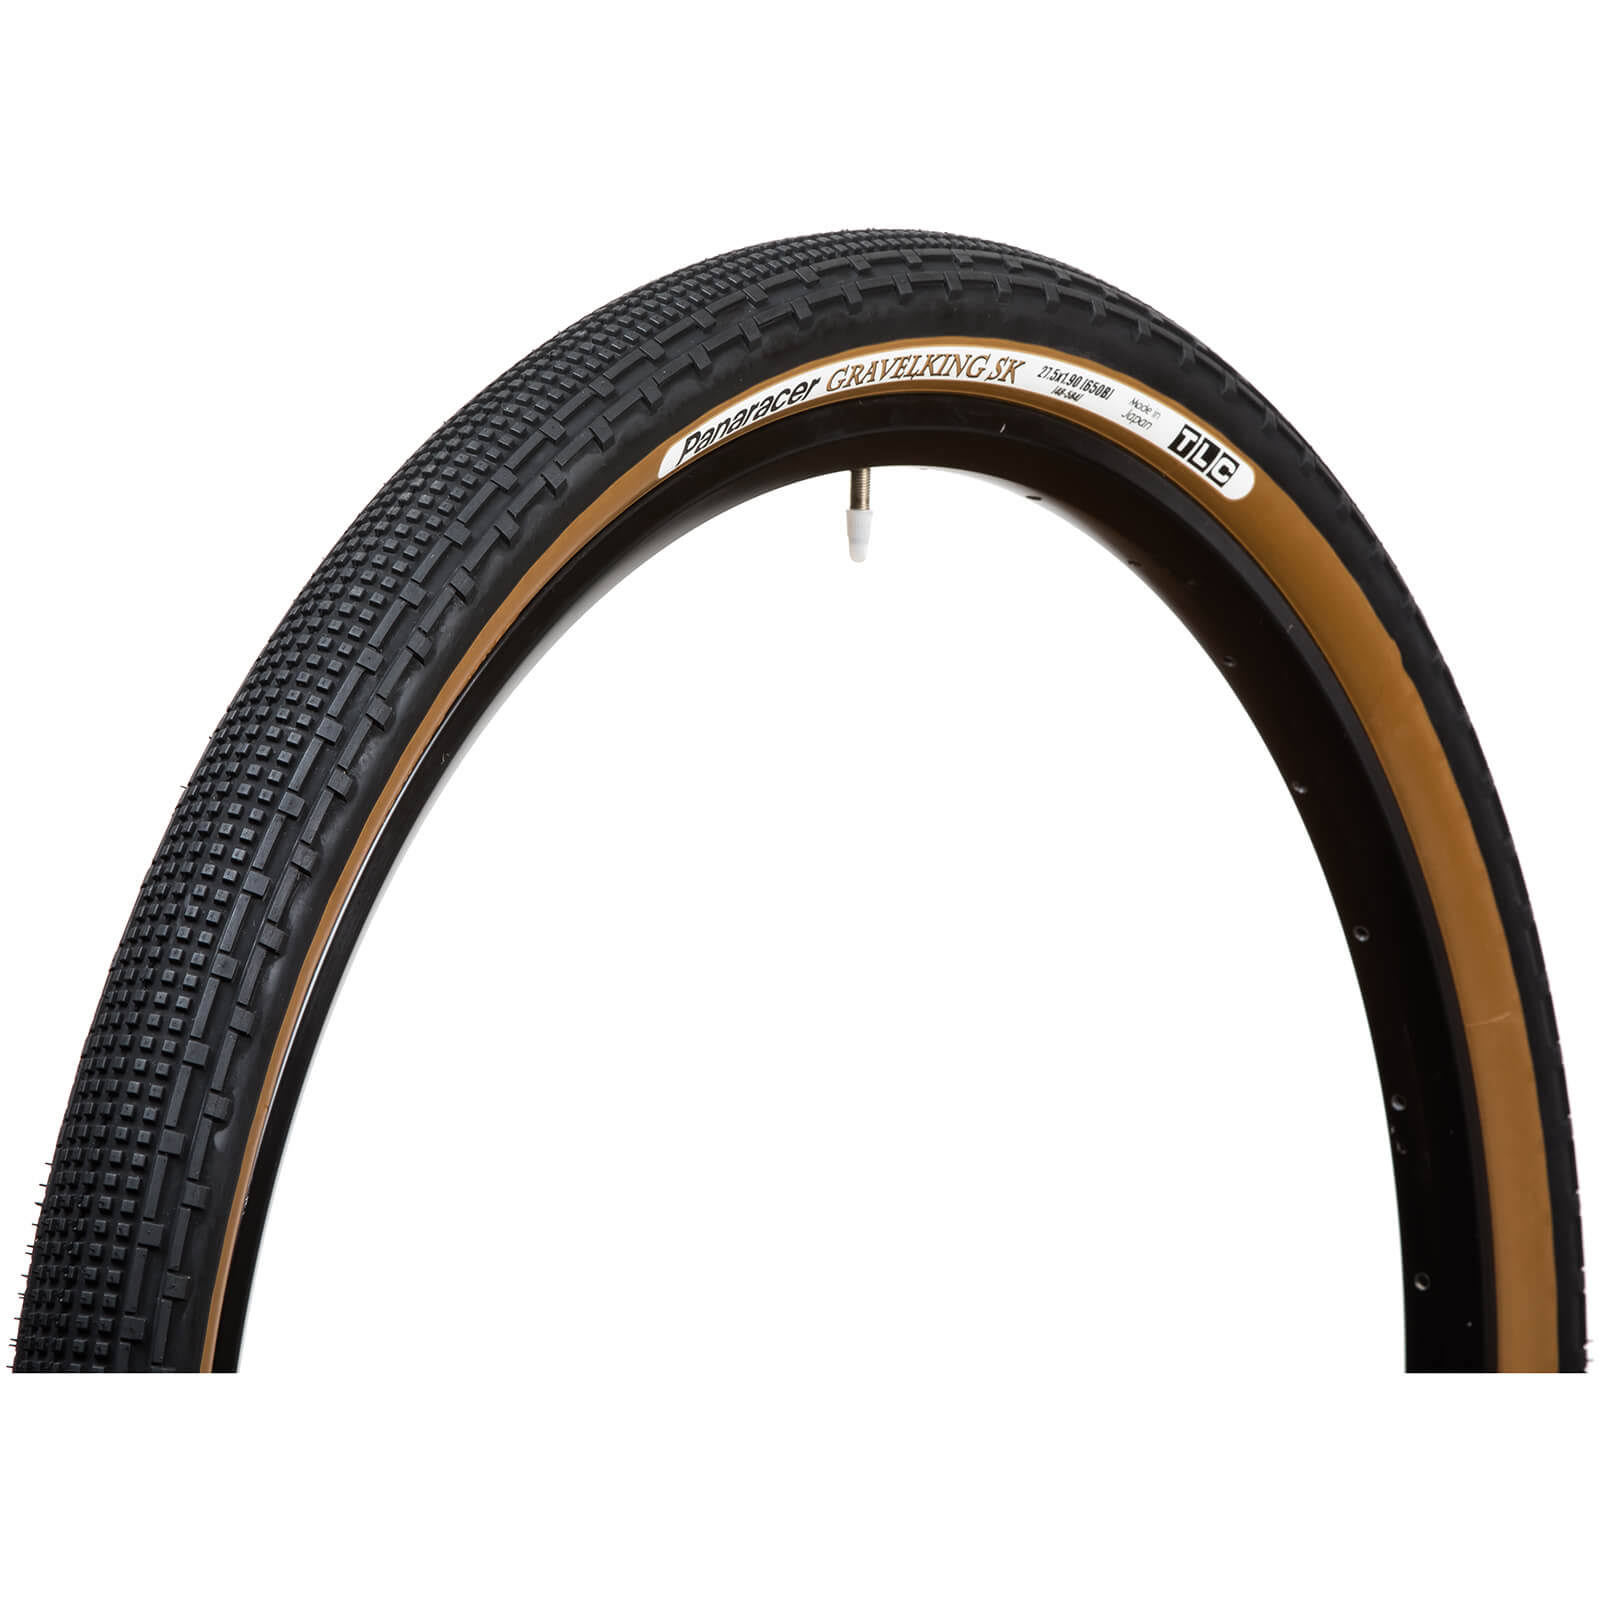 Panaracer Gravel King SK Tubeless Folding Tire - Black/Brown, 27.5" x 1.9"